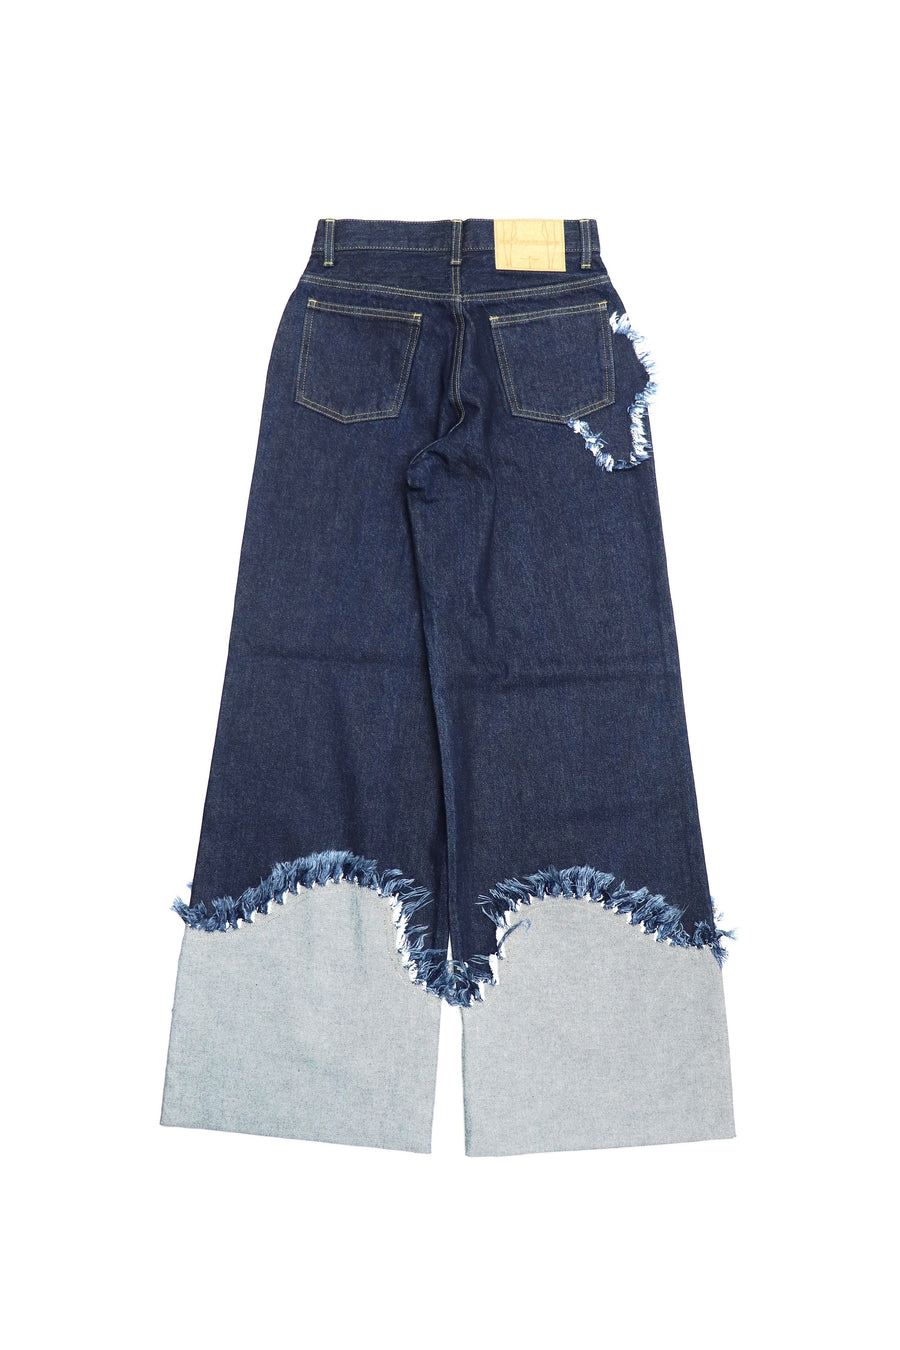 KOTOHAYOKOZAWA's Rolled Up Denim Pants Indigo mail order | Palette